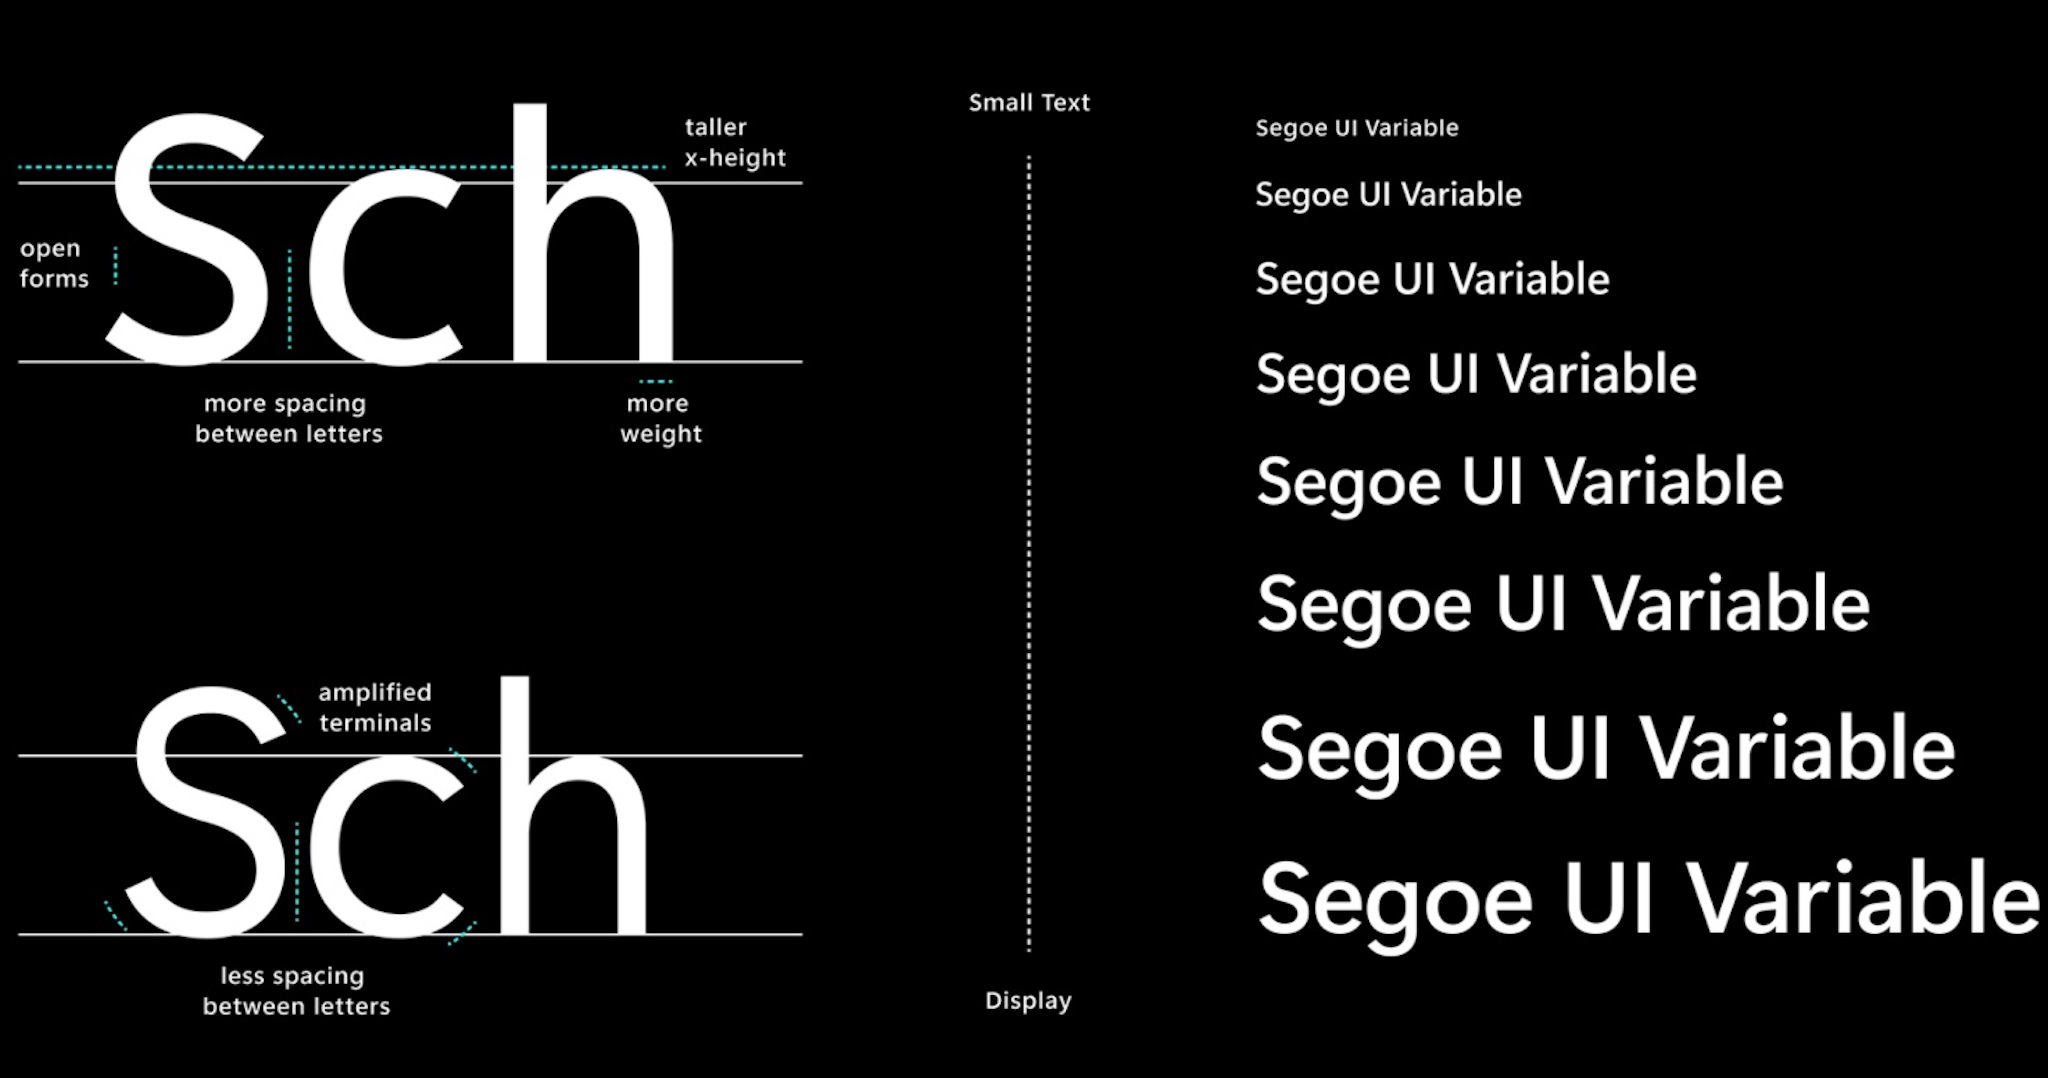 Font Segoe UI: Font Segoe UI đang trở thành xu hướng phổ biến nhất hiện nay cho những người đang sử dụng máy tính. Với các chức năng mới nhất như cải thiện độ sắc nét và độ tương phản, font này đem đến cho bạn trải nghiệm chữ viết cuộn dòng dễ đọc hơn và tốt nhất. Hãy cập nhật ngay font Segoe UI để thấy sự khác biệt!